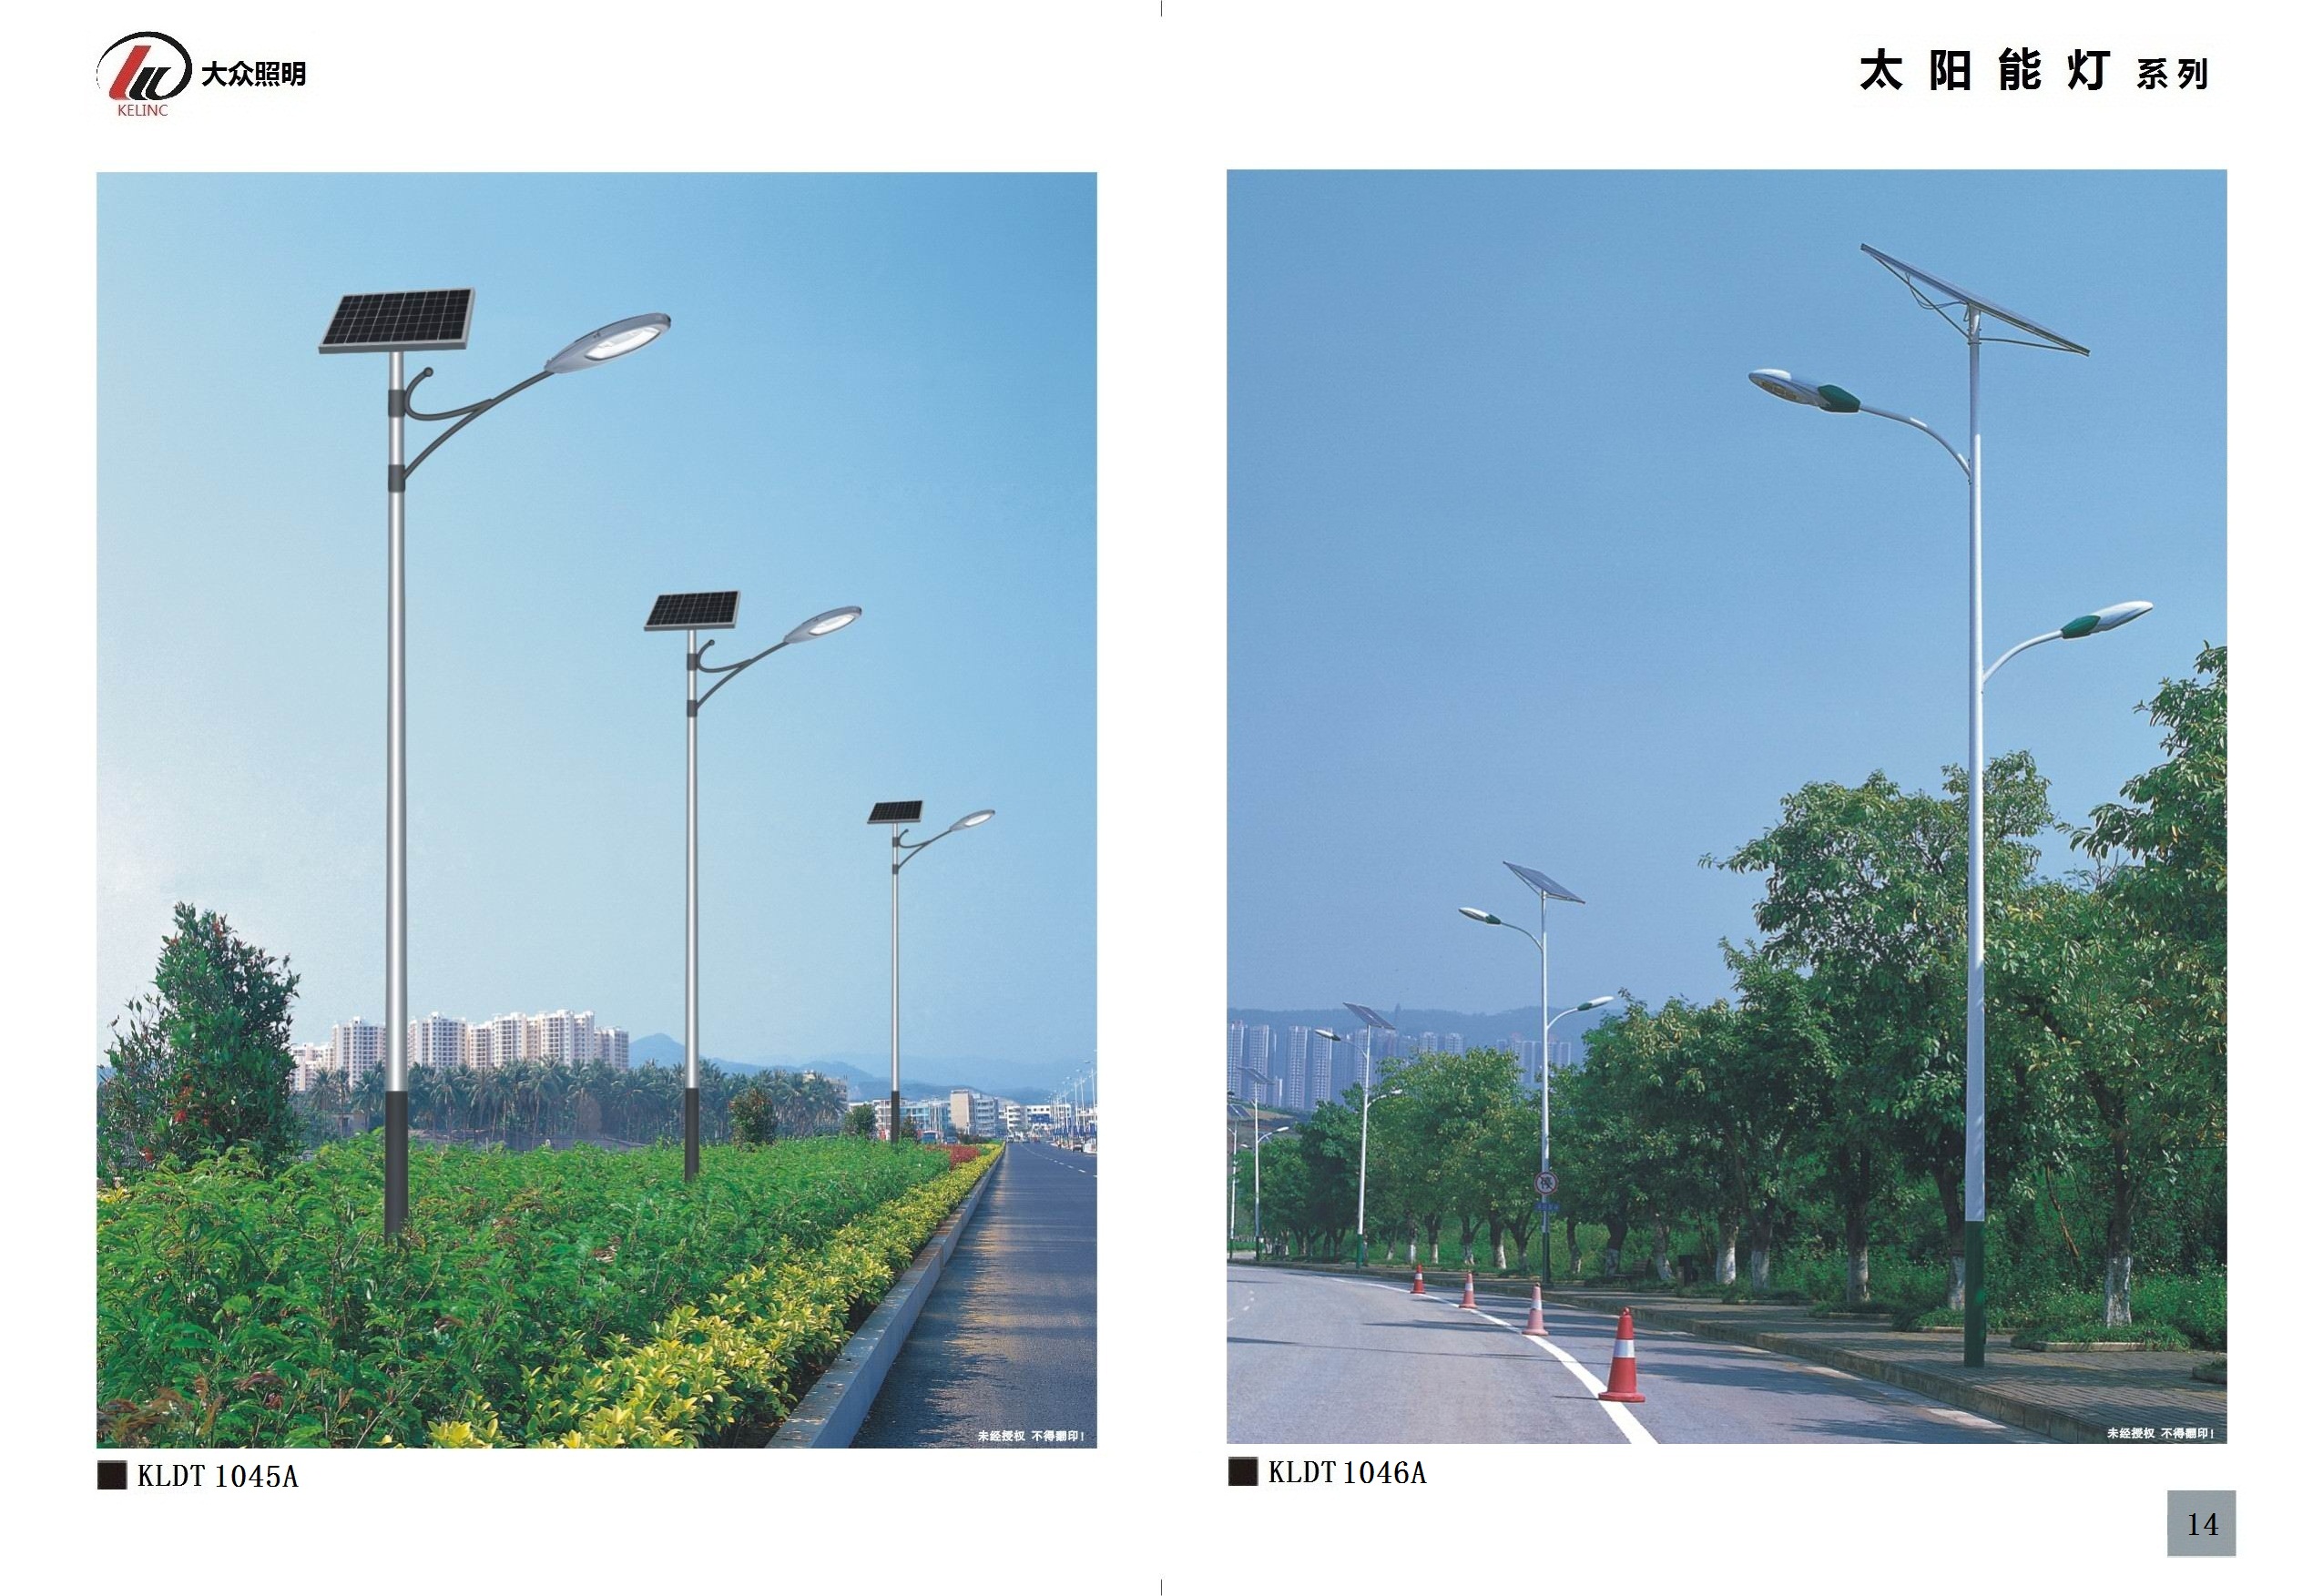 太阳能路灯与普通路灯的对比